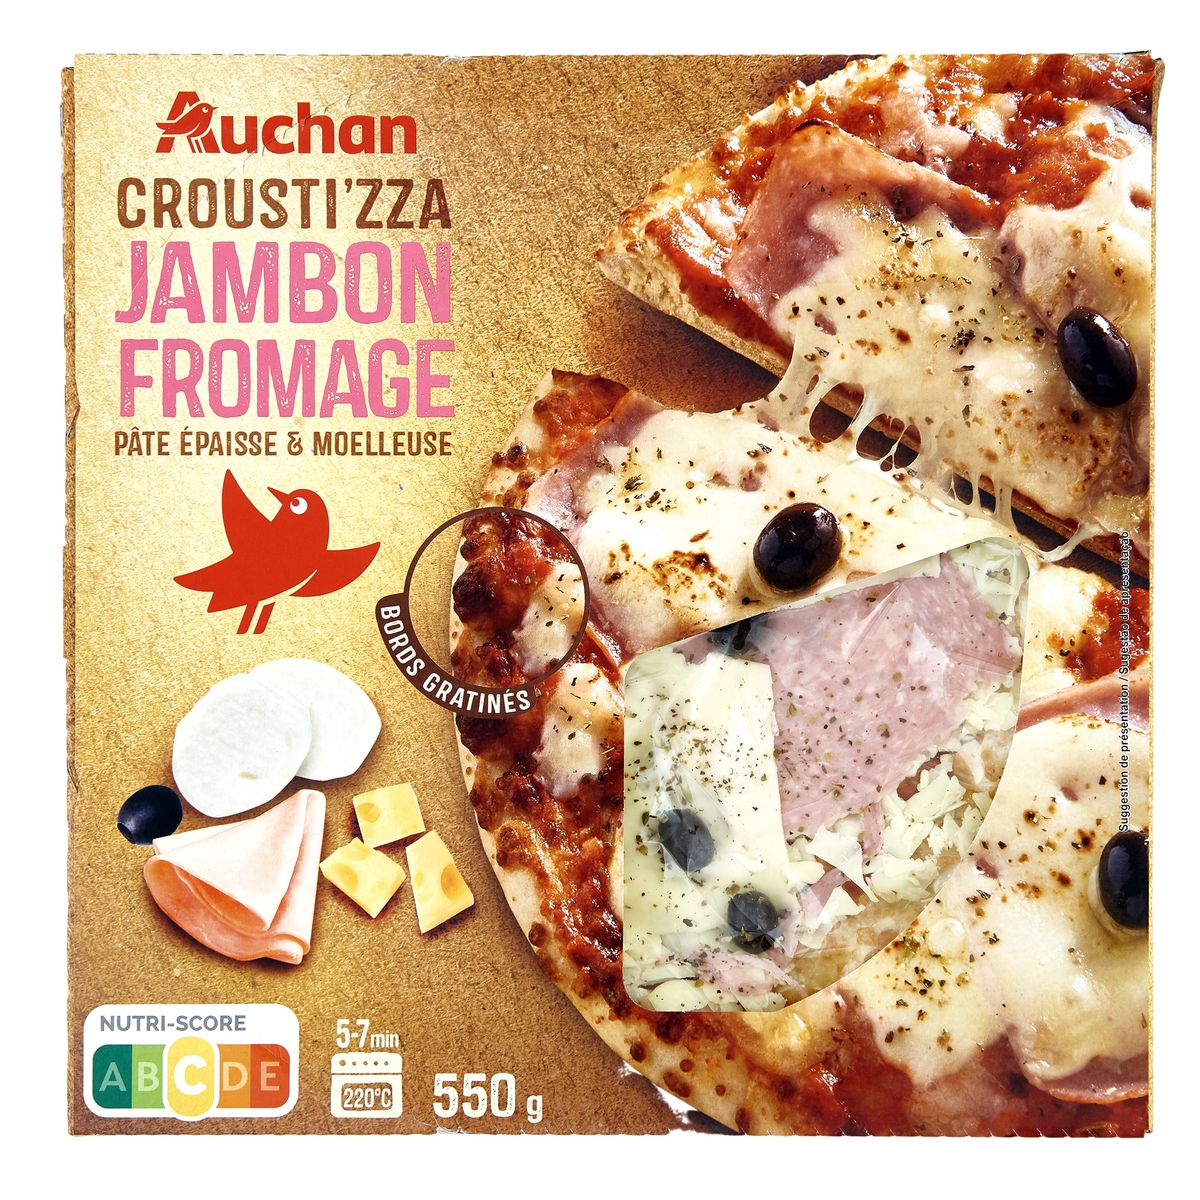 AUCHAN Croust izza jambon fromage 1 pièce 550g